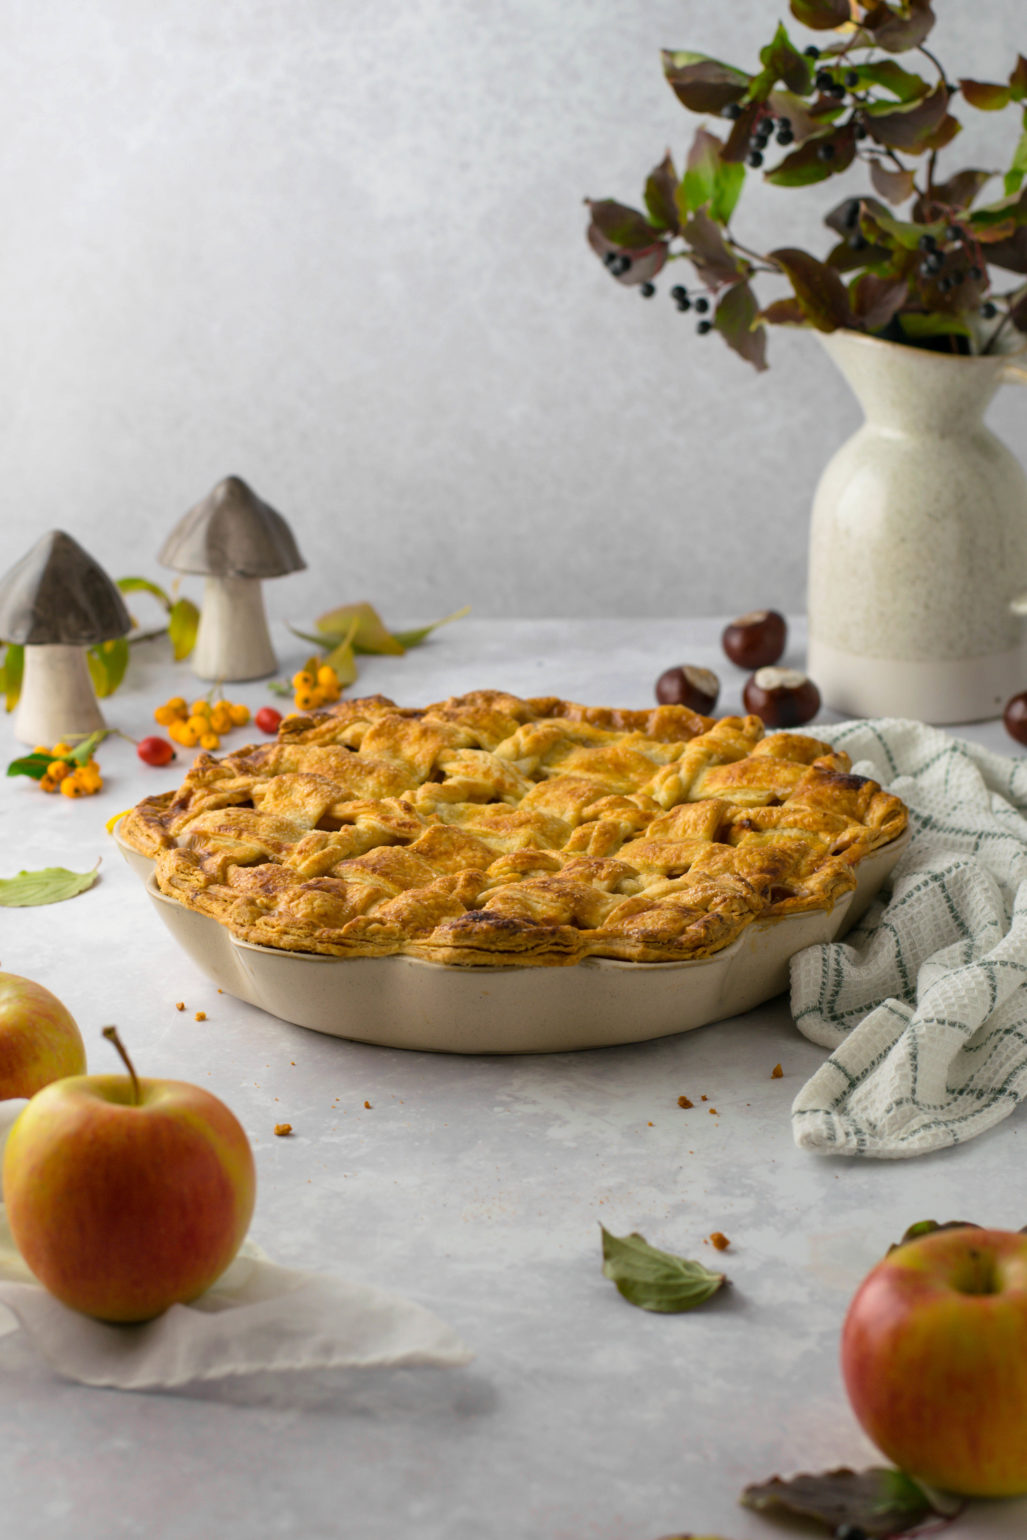 Klassischer Apple Pie Einfaches Rezept zum Backen von amerikanisch klassischem Apple Pie mit Ahornsirup. Saisonaler gedeckter Apfelkuchen mit schön dekoriertem Teig Gitter. #Applepie #Pie #Piecrust #Rezept #deutsch